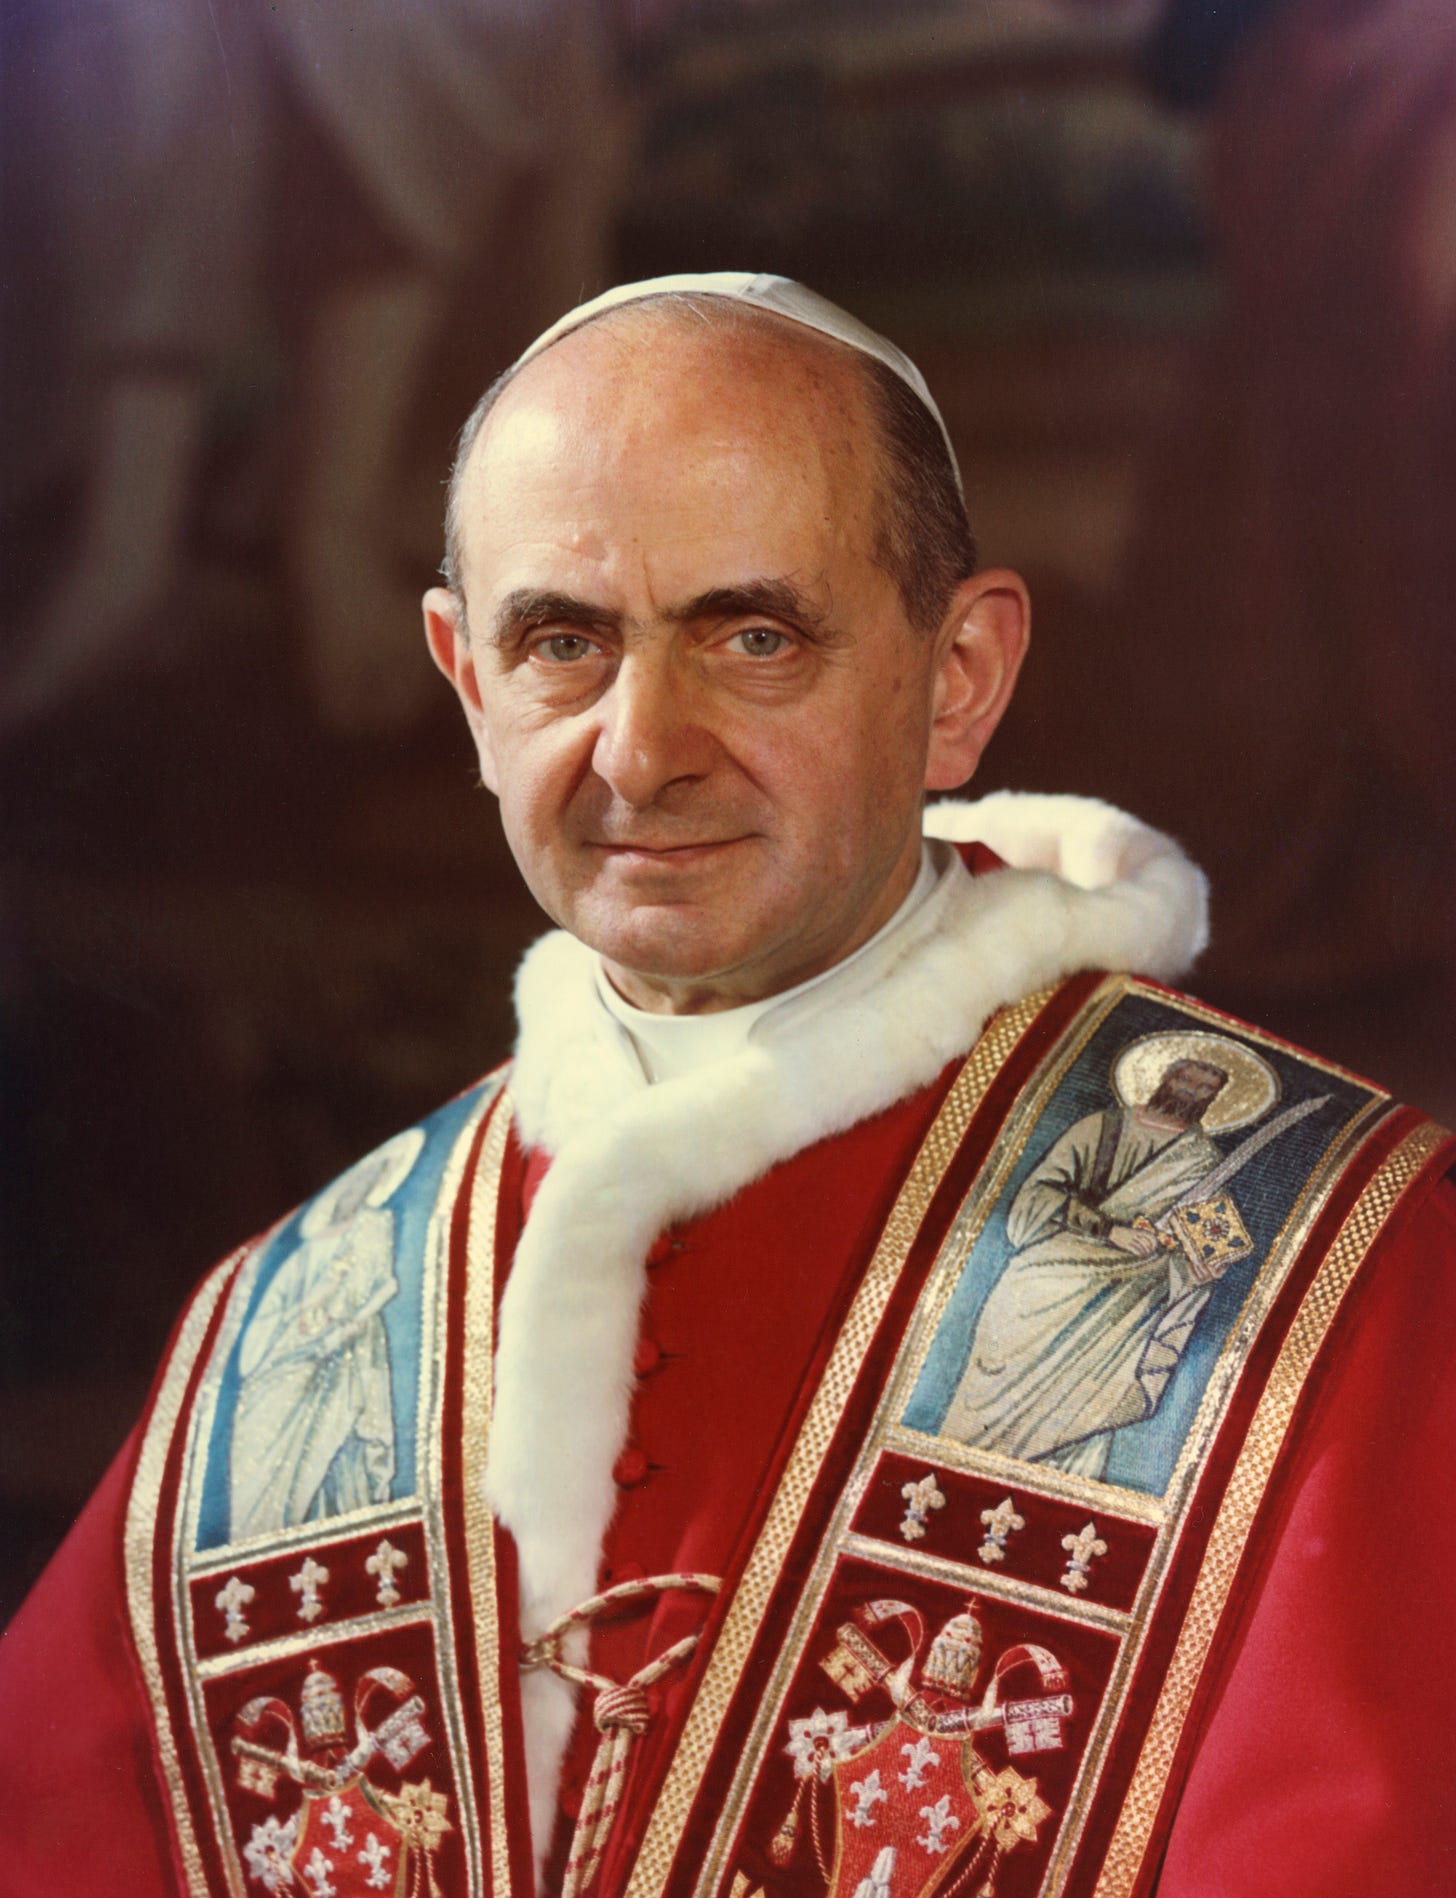 Pope Paul VI - Wikipedia